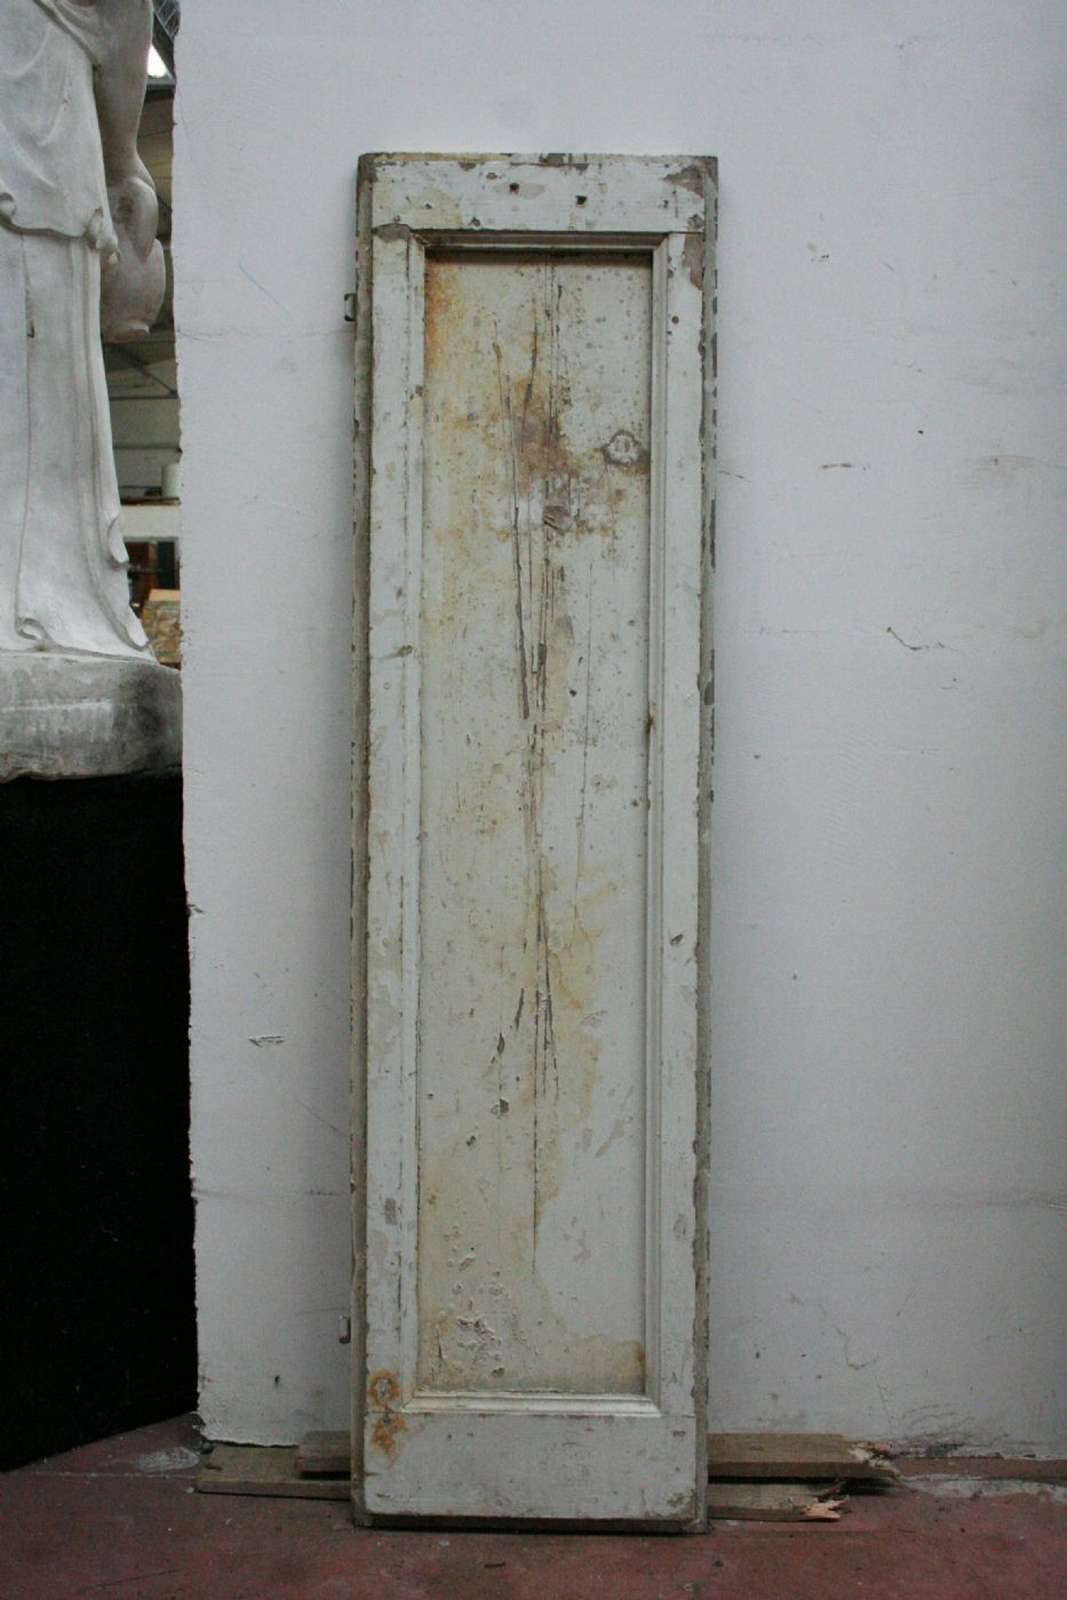 Antico scuro laccato in legno - Scuri e Stipi Antichi - Porte Antiche - Prodotti - Antichità Fiorillo